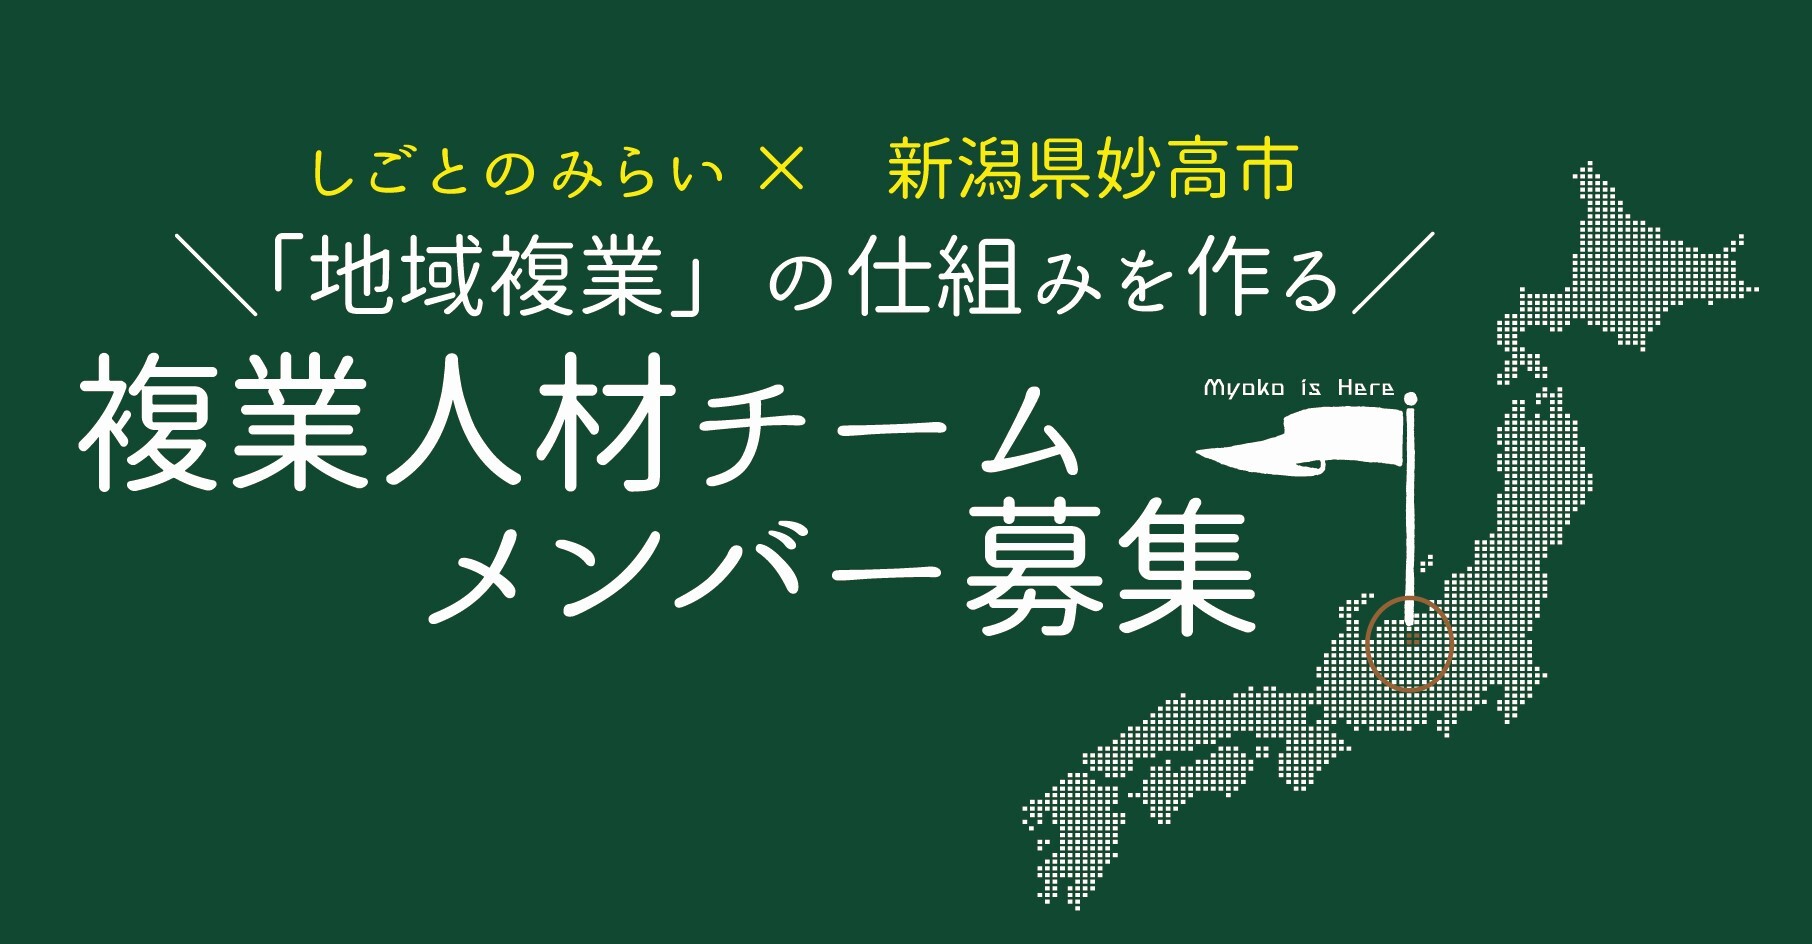 新潟県妙高市 地域複業の仕組みを作る 複業人材チーム メンバーを募集 特定非営利活動法人しごとのみらいのプレスリリース